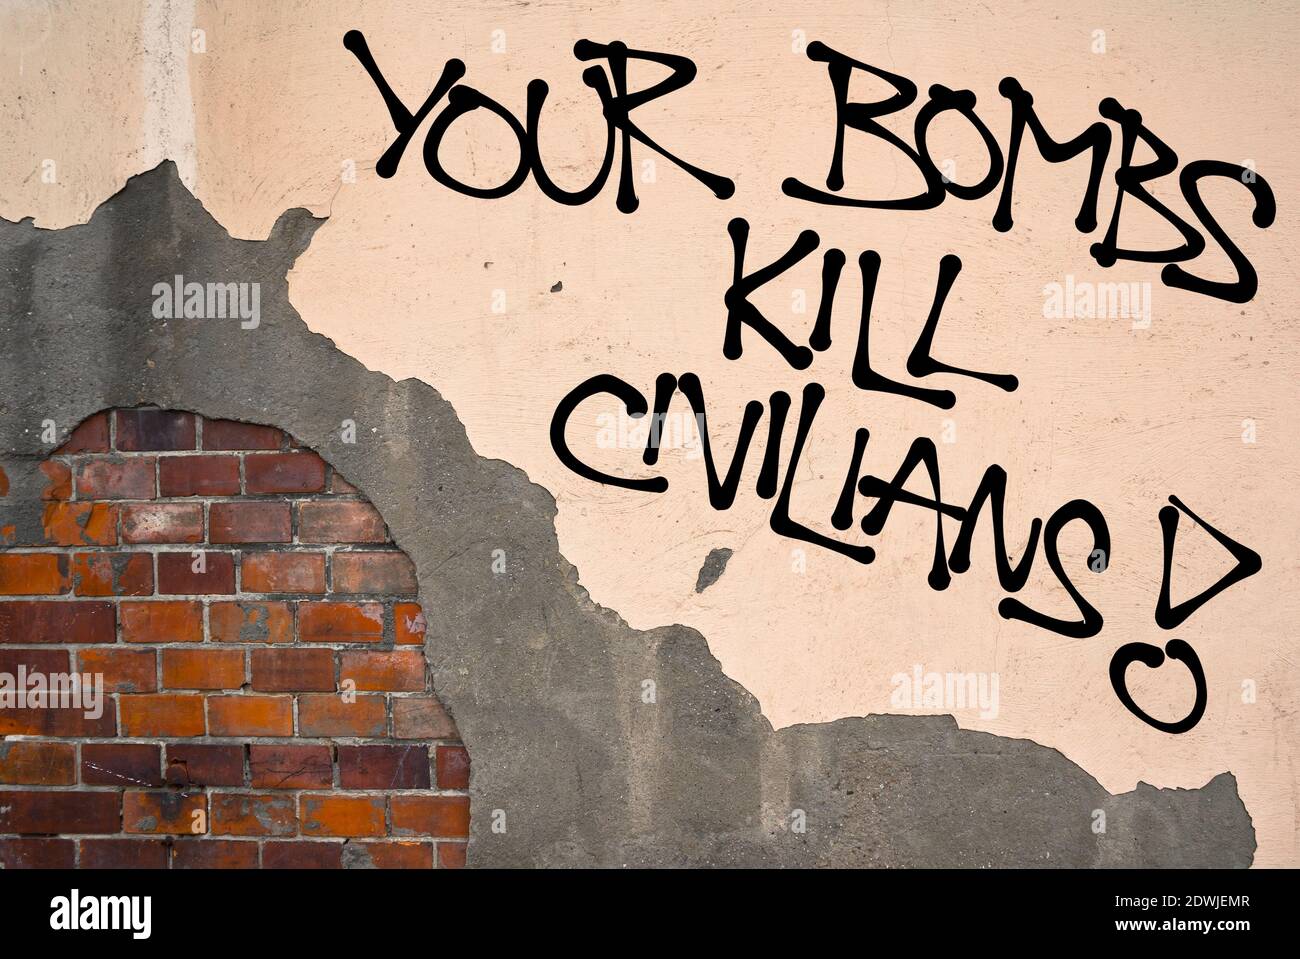 Deine Bomben Töten Zivilisten - handgeschriebene Graffiti an die Wand gesprüht, anarchistische Ästhetik - Protest gegen Kollateralschäden während des Krieges in Kriegsgebiet. Figh Stockfoto